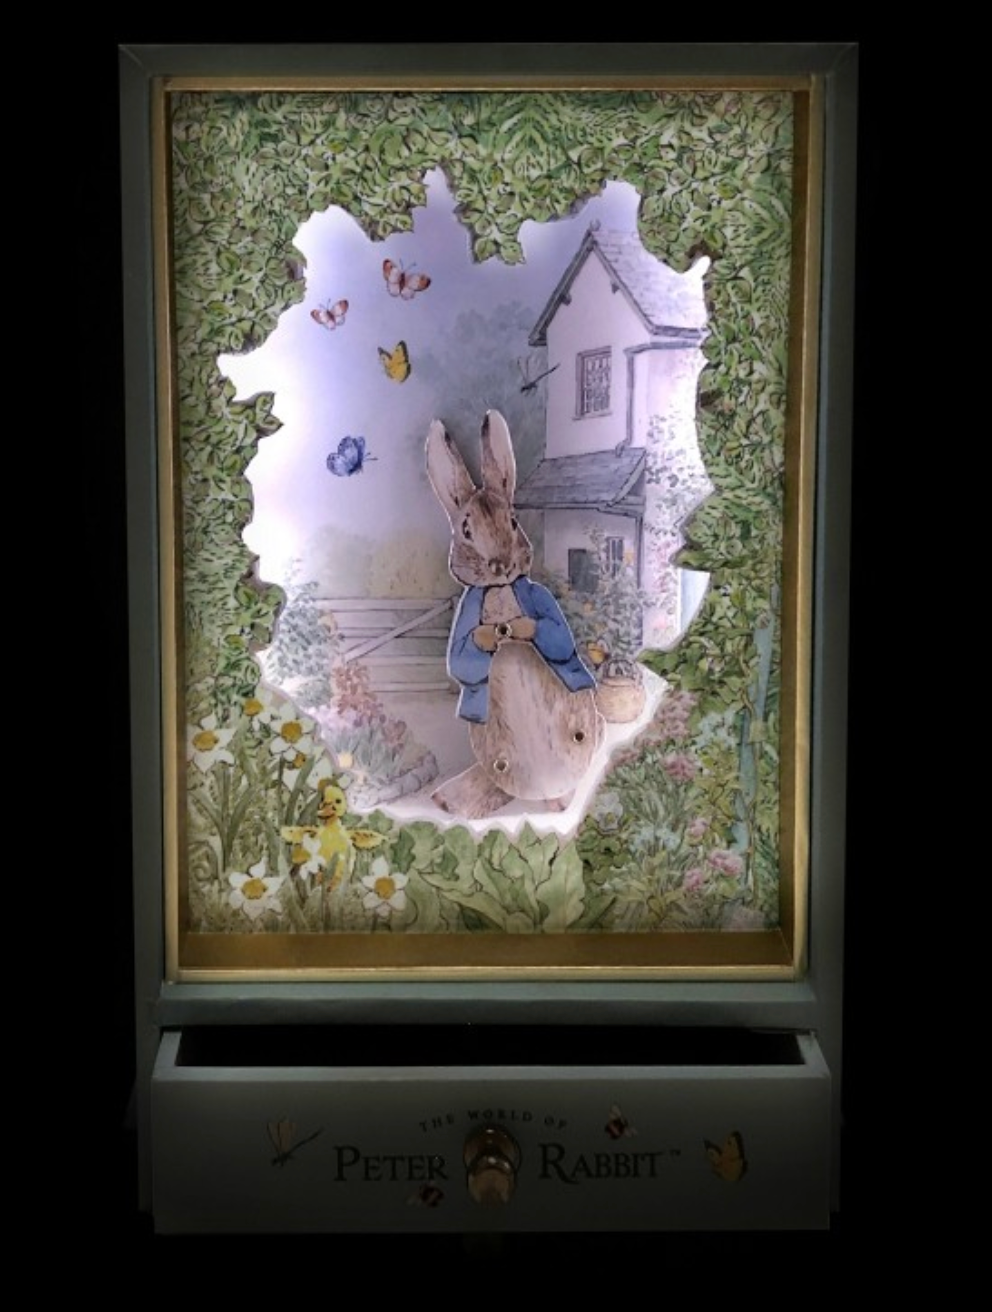 Grand dancing musical et veilleuse Peter Rabbit jardin TROUSSELIER